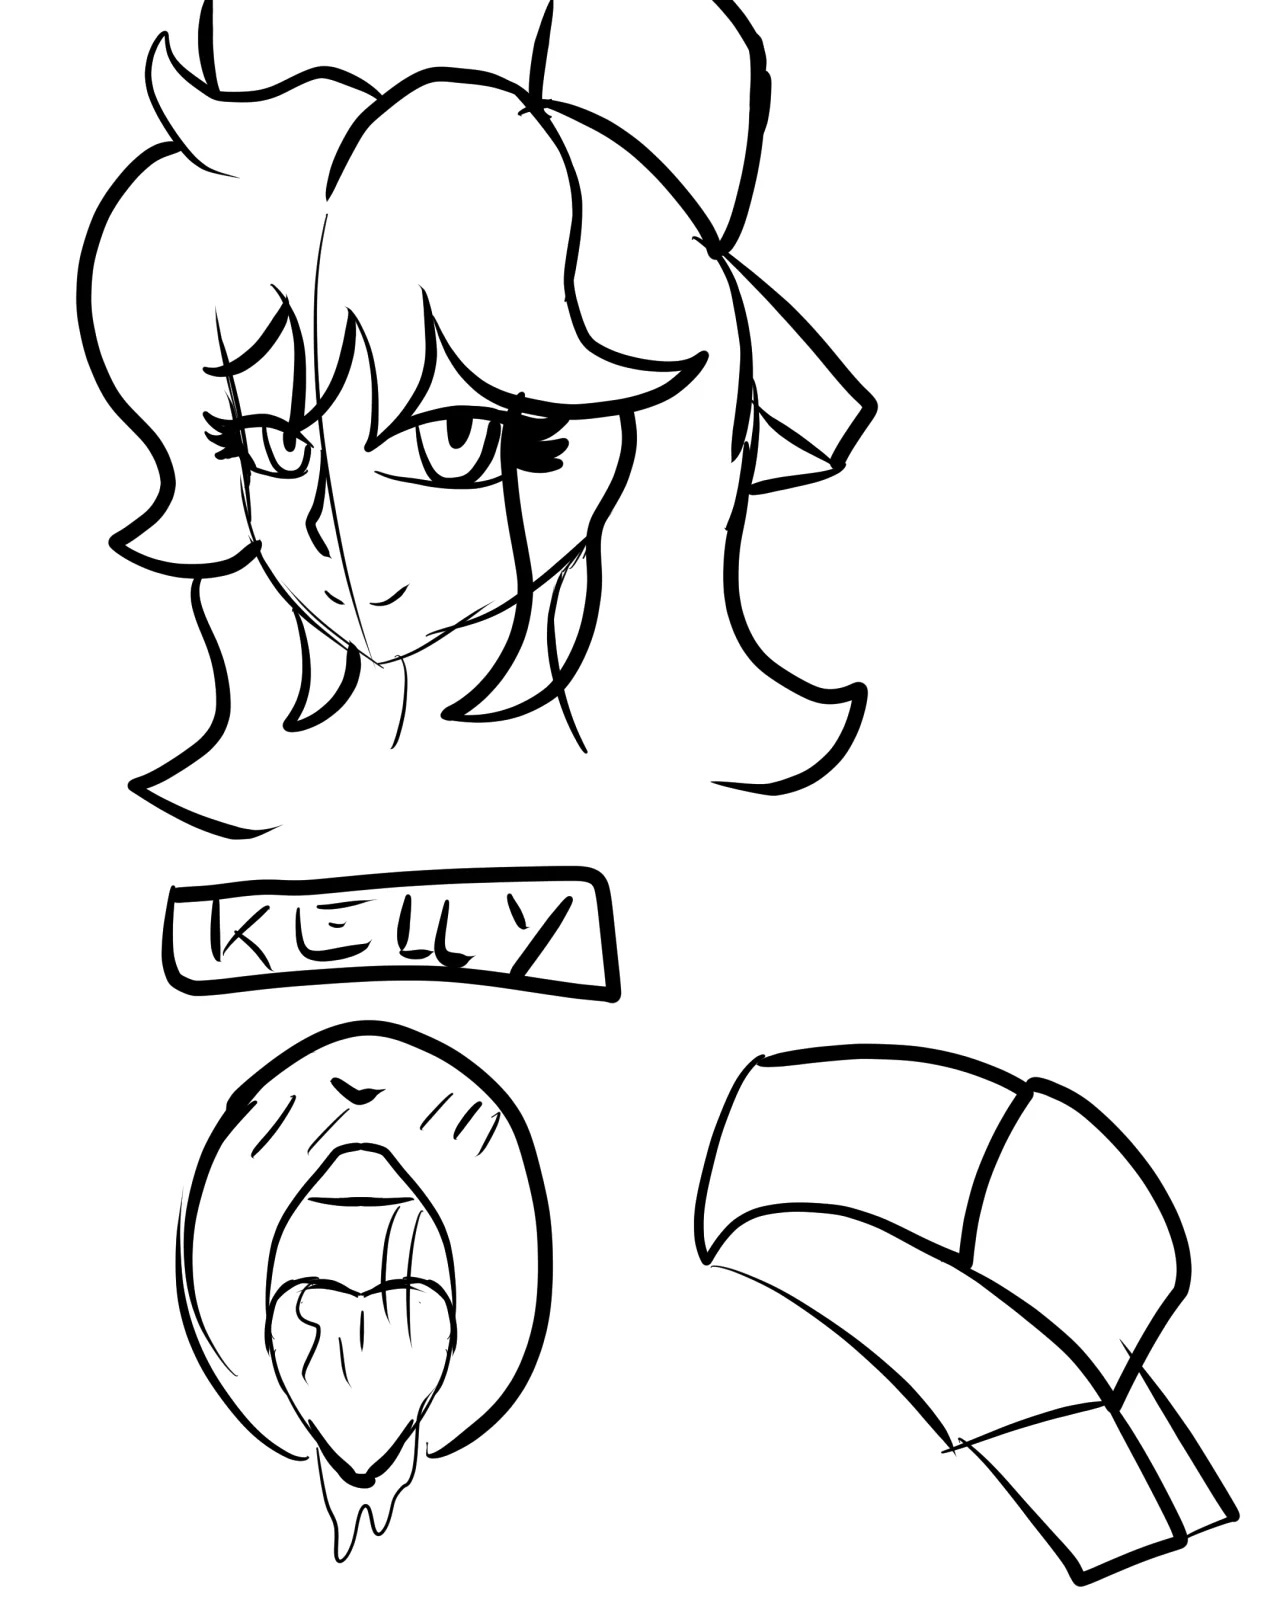 El amor de Kelly - 9